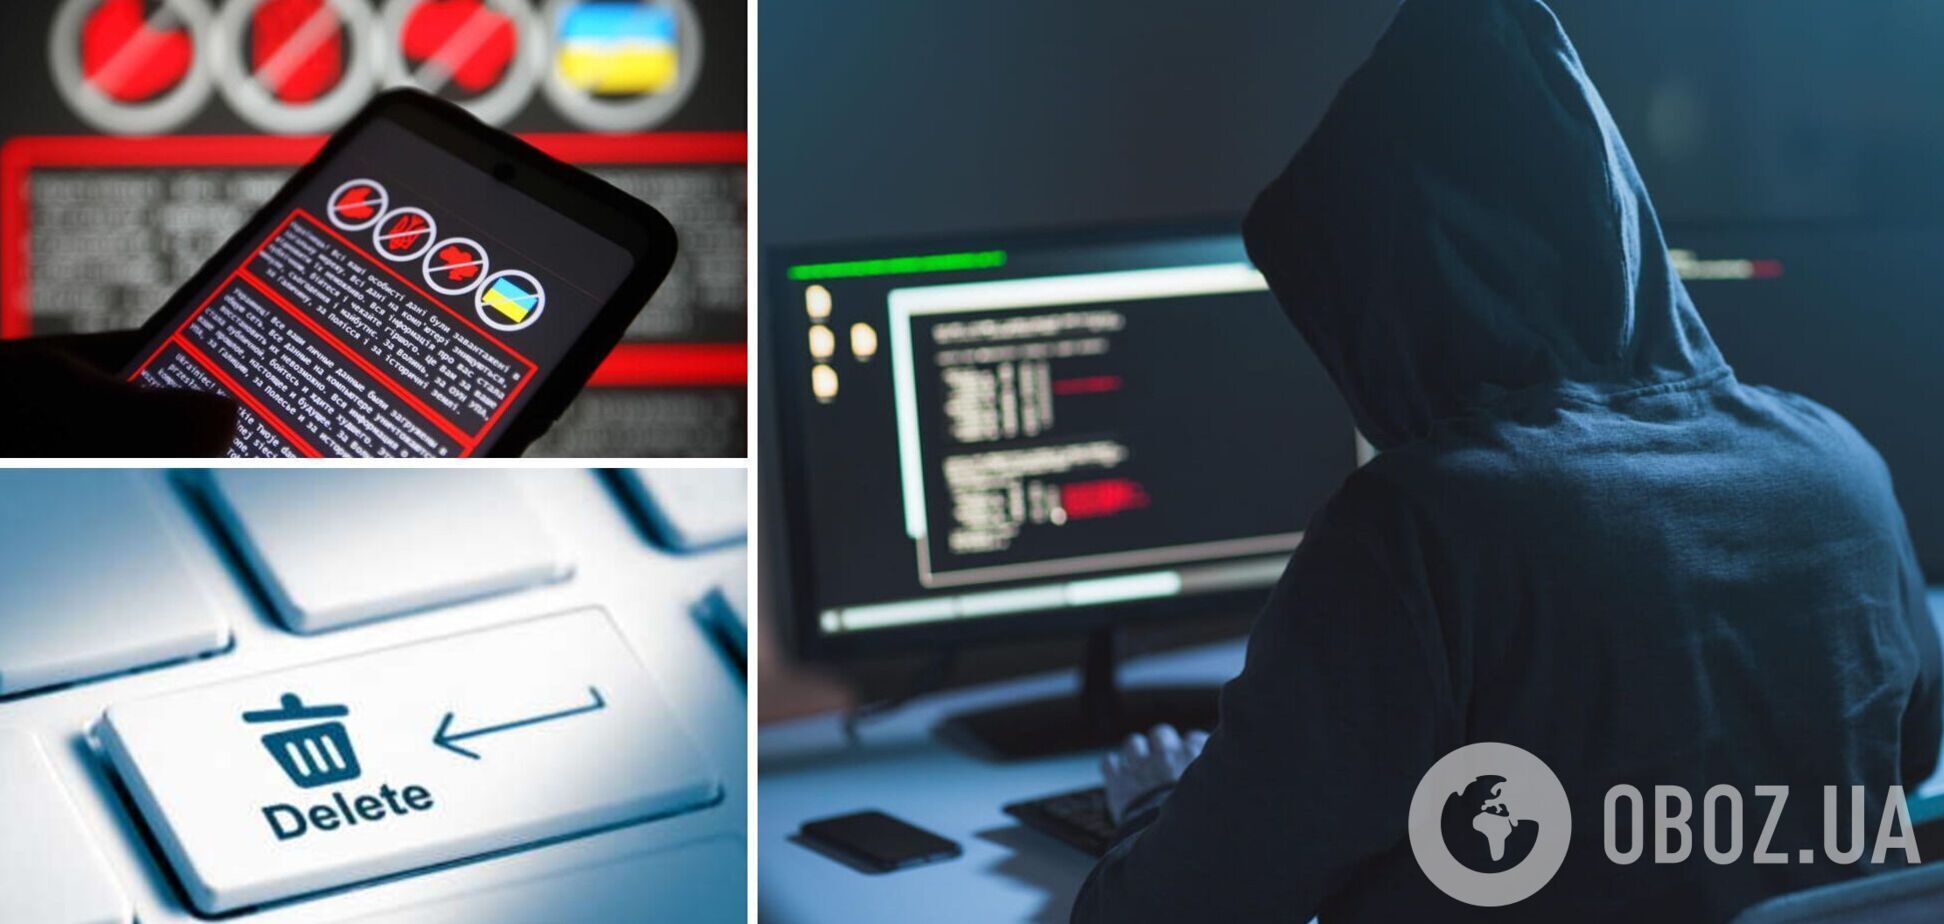 Хакеры во время атаки на госсайты Украины использовали две программы: выяснились новые подробности